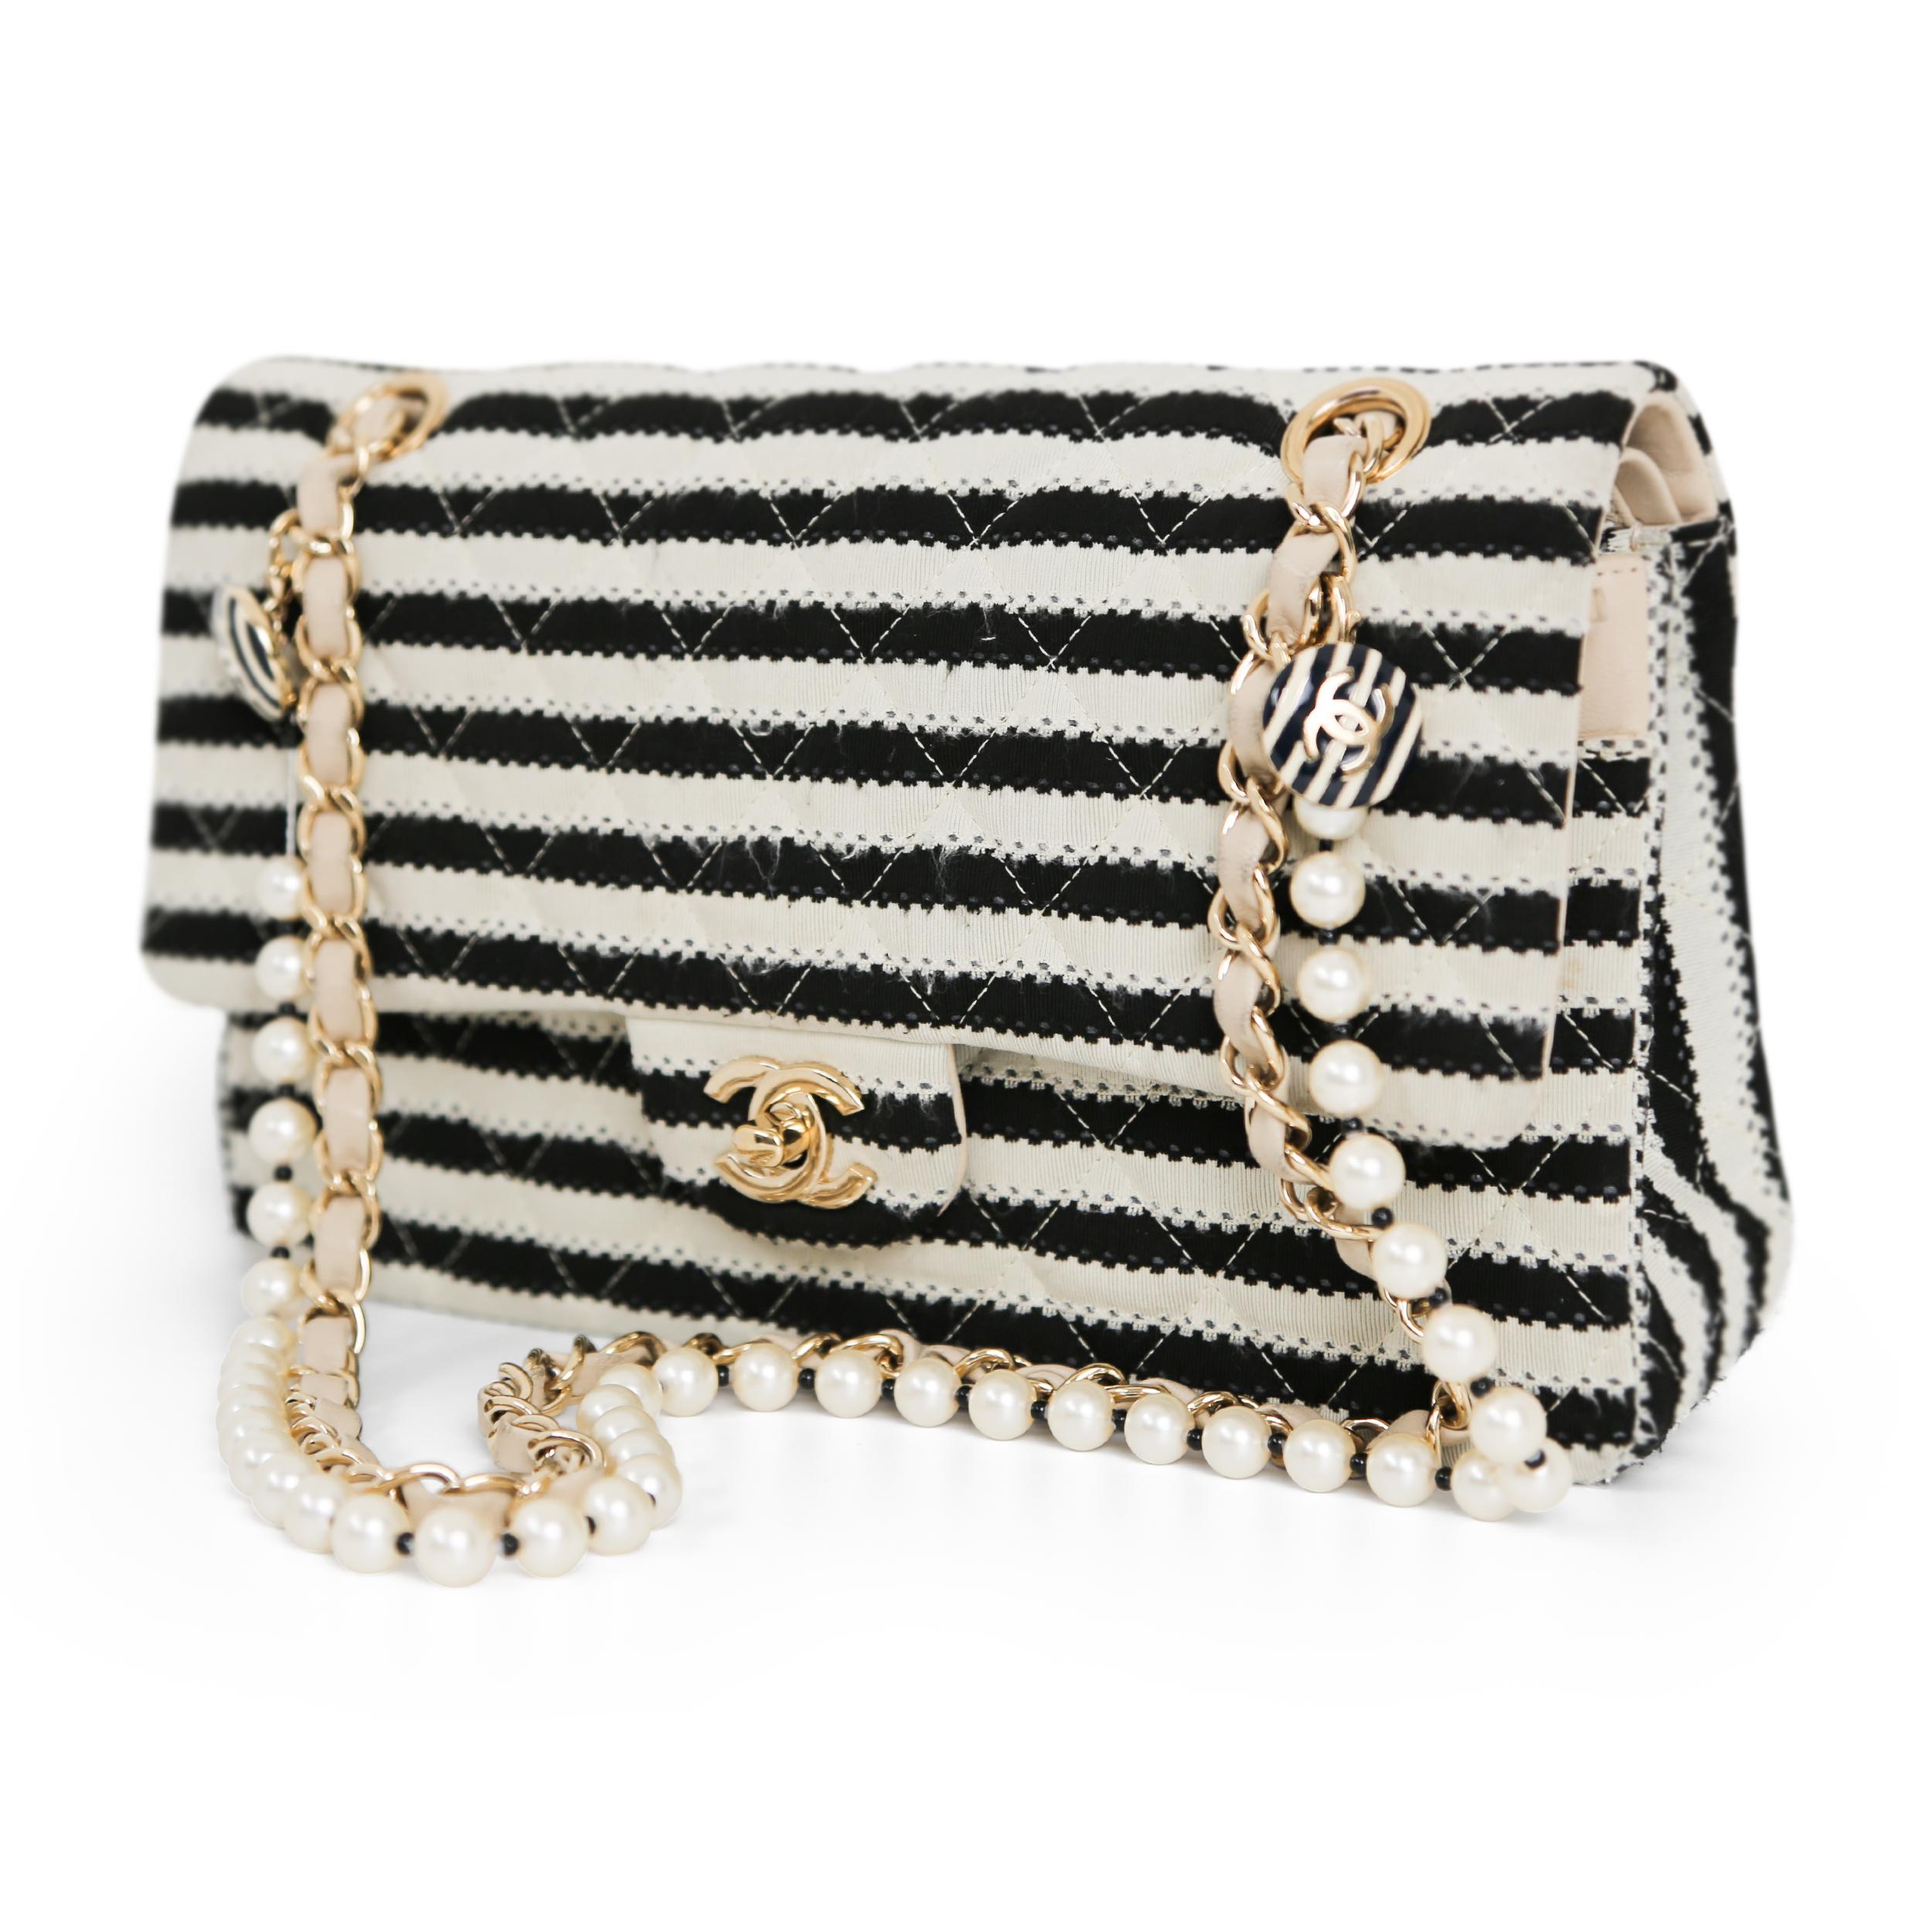 Die Coco Sailor Classic Flap Bag von Chanel ist ein absolutes Must-have. Dieses limitierte Design aus dem Jahr 2014 bietet eine moderne Variante der klassischen Überschlagtasche. Die Außenseite ist aus hochwertigem Stoff gefertigt, während die